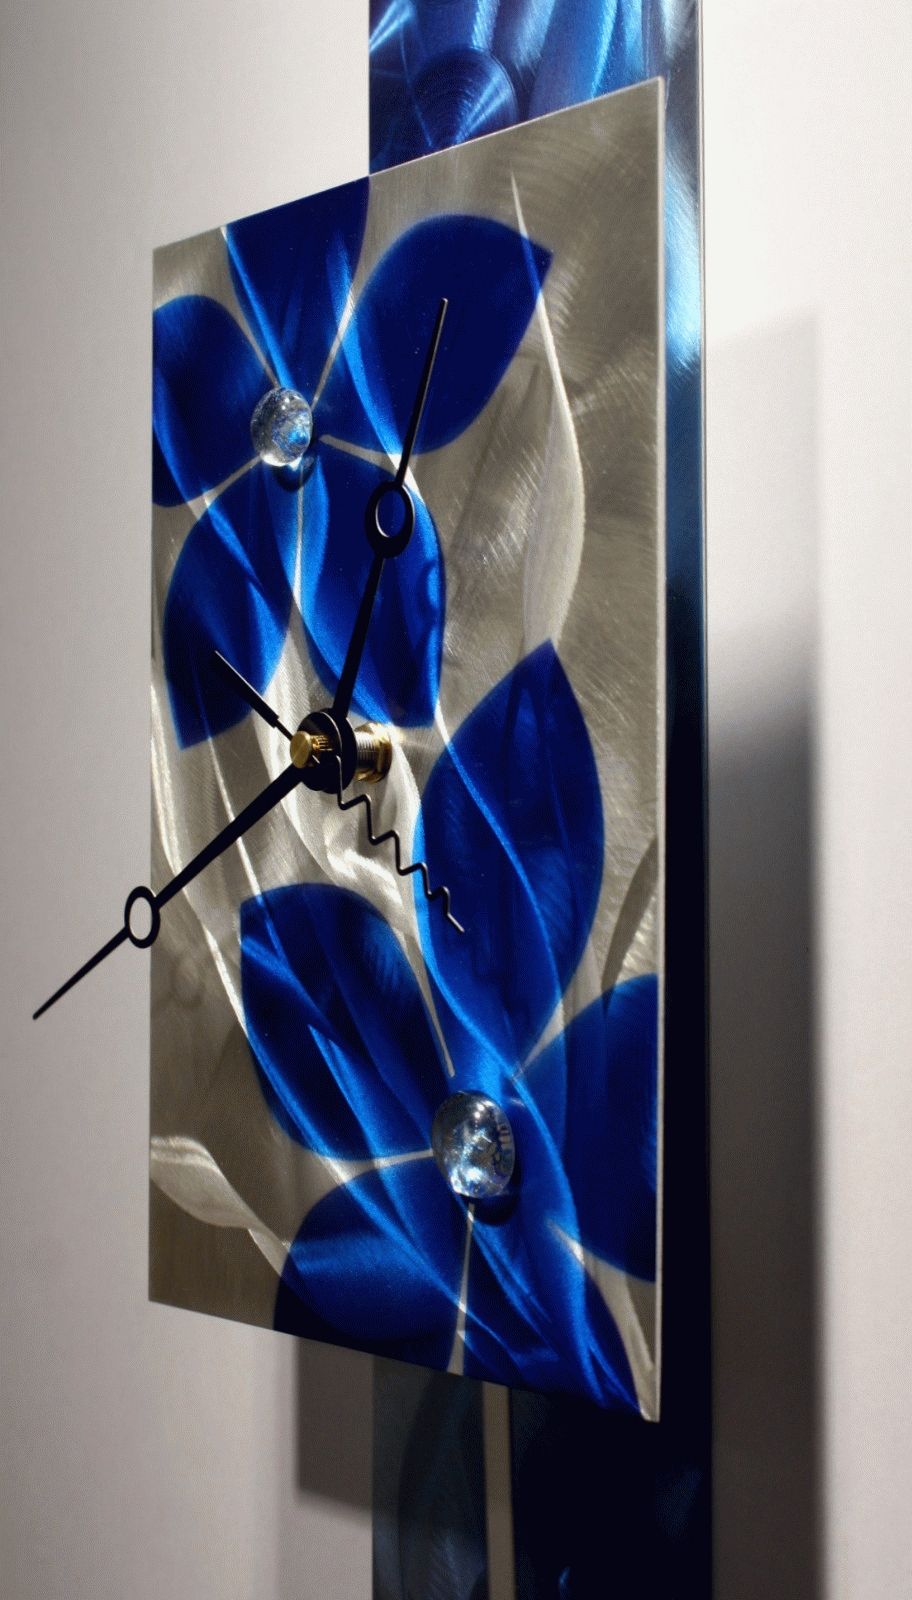 Metal Wall Art Sculpture Pendulum Clock Modern Abstract Decor Inside Most Popular Abstract Clock Wall Art (View 2 of 20)